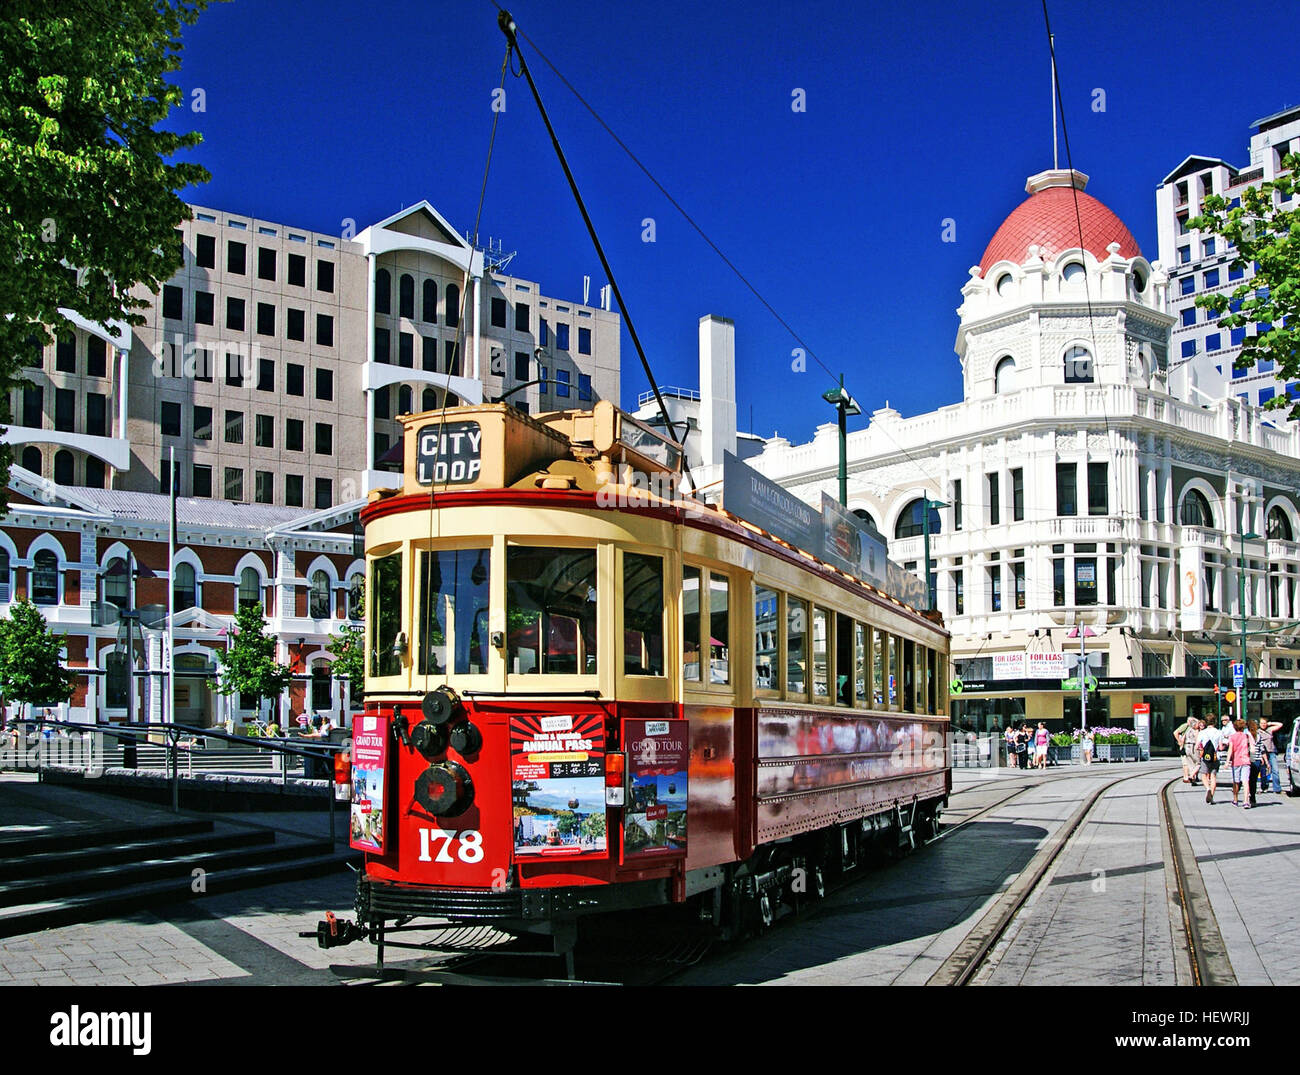 Genießen Sie eine Reise mit Stil durch die sich wandelnde Gesicht der Christchurch Stadtzentrum an Bord unserer wunderschön restaurierte Erbe Straßenbahnen. Christchurch führenden Attraktionen, die Straßenbahn ist ein einzigartiges Erlebnis der Geschichte und Sehenswürdigkeiten. Stockfoto